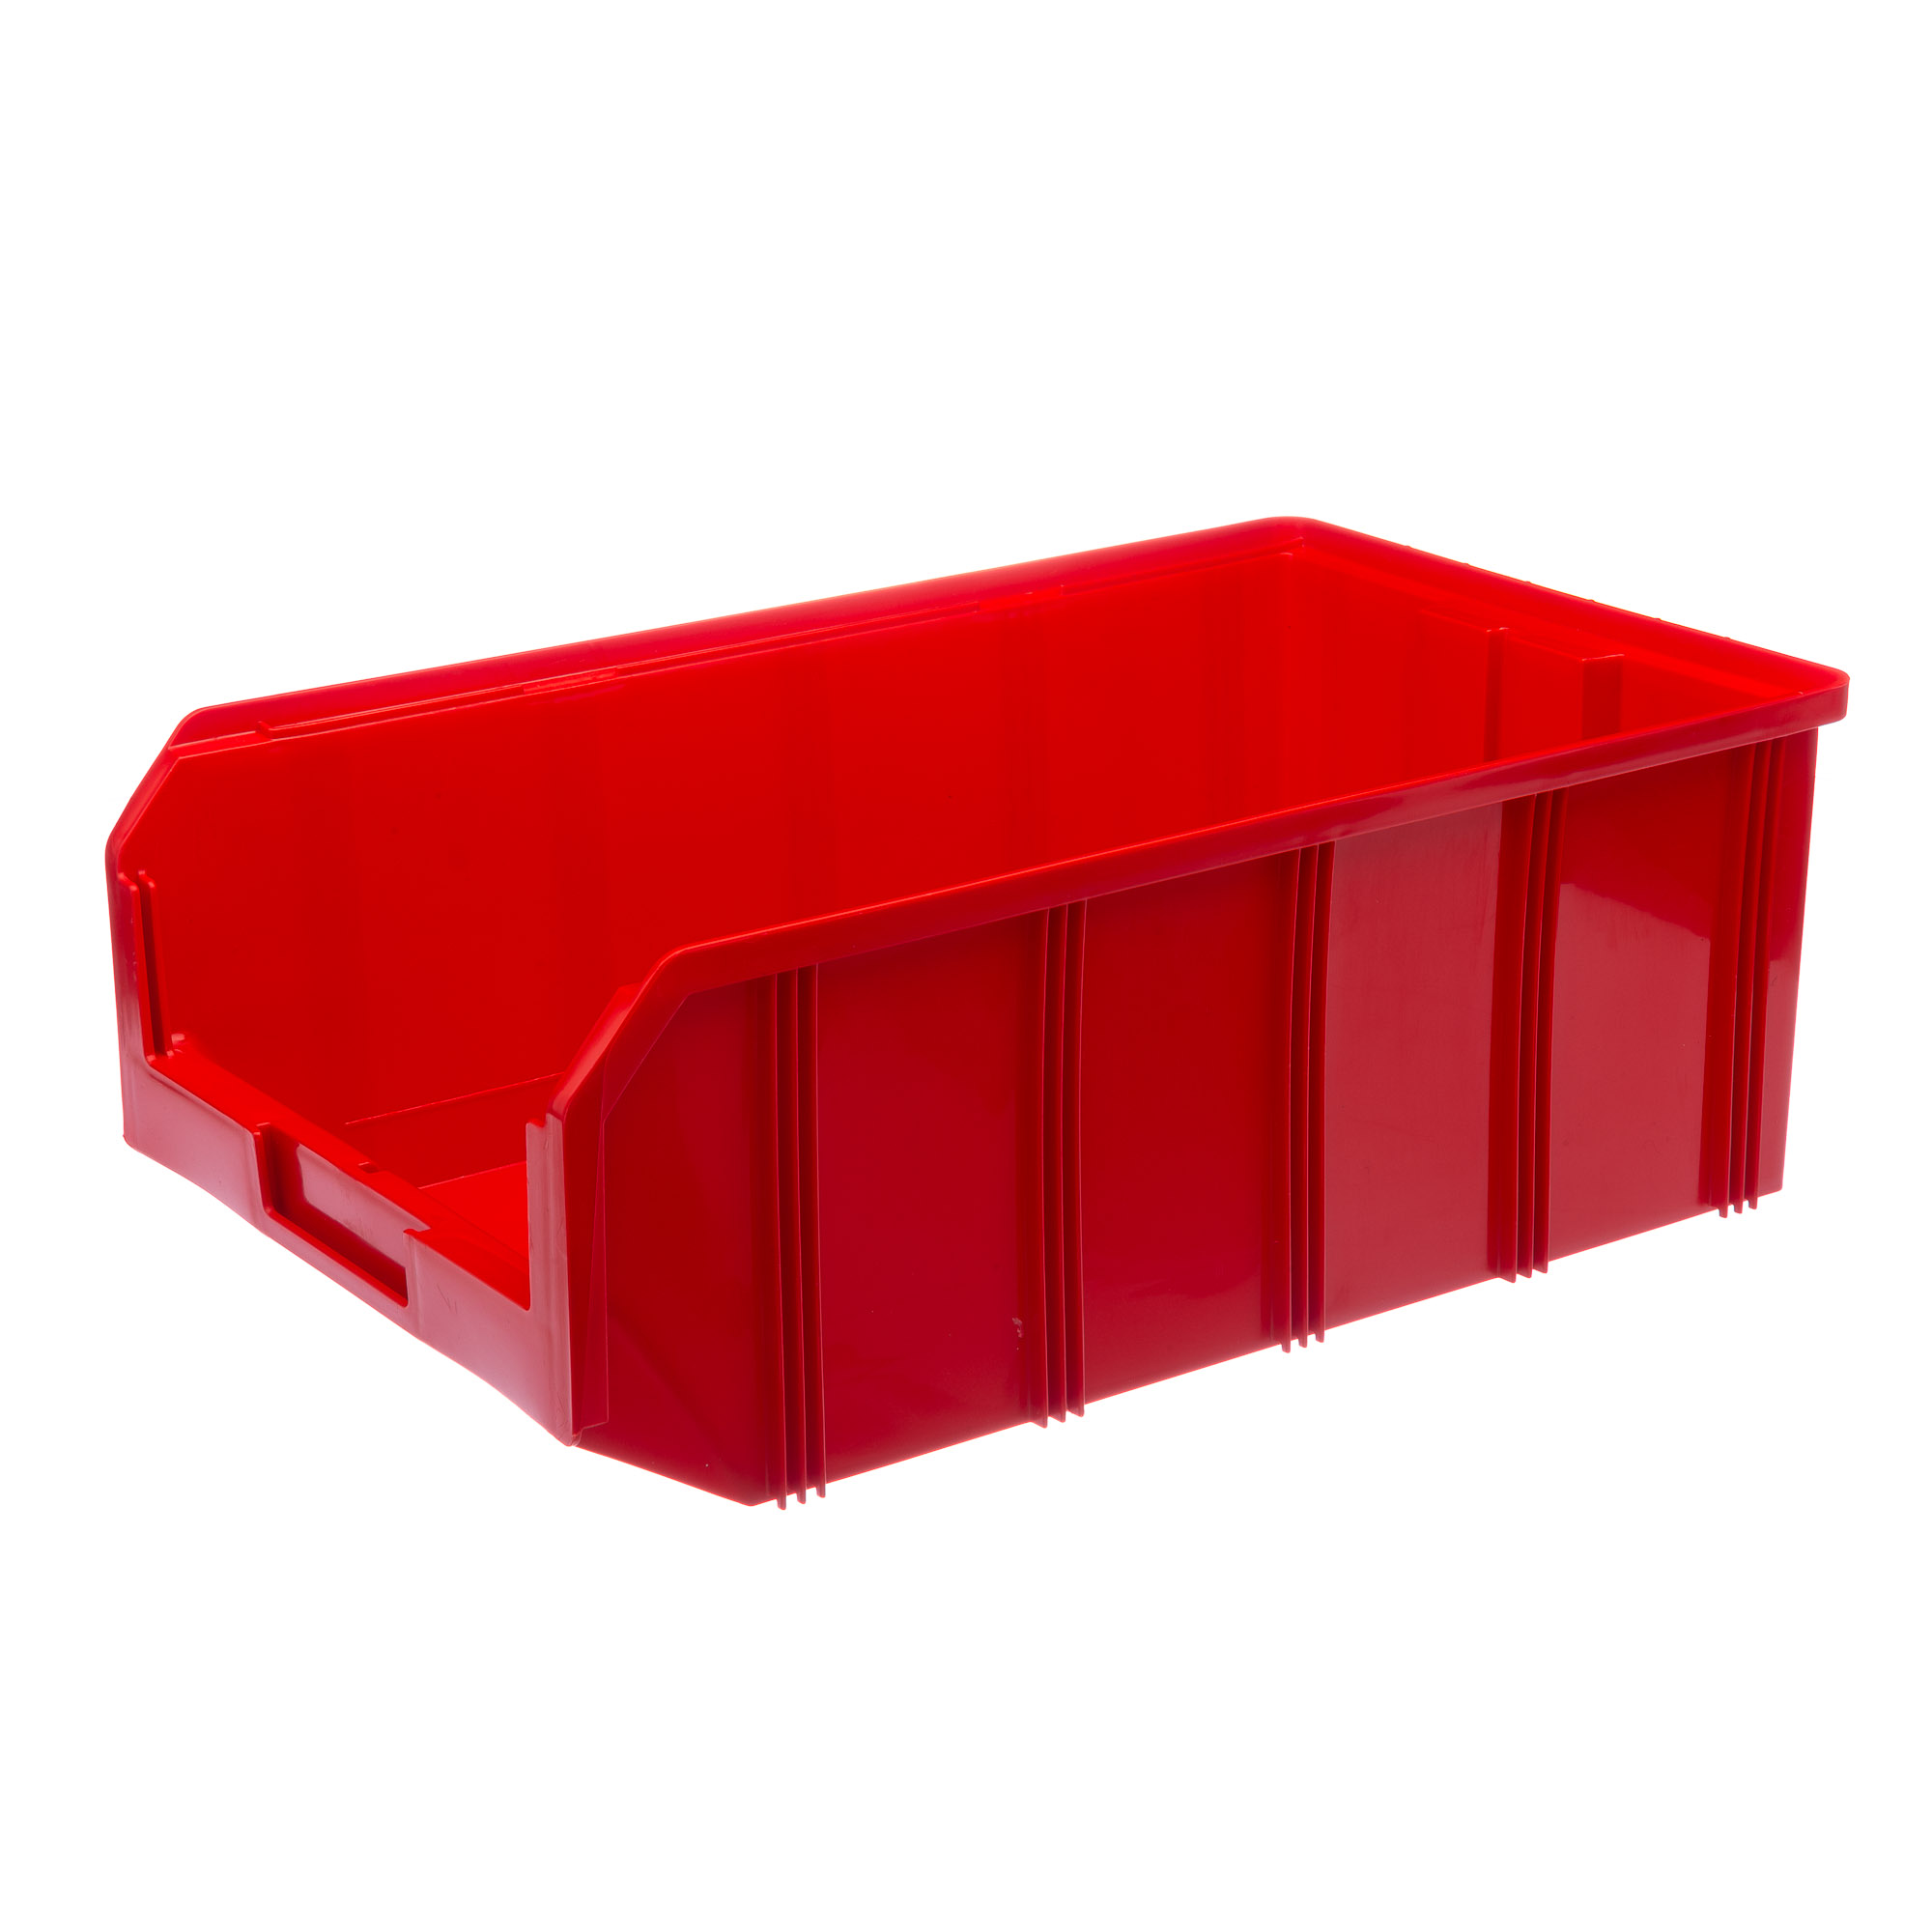 Пластиковый ящик Стелла-техник V-4-красный бокс пластиковый для хранения 28 ячеек 17 5×11×2 8 см